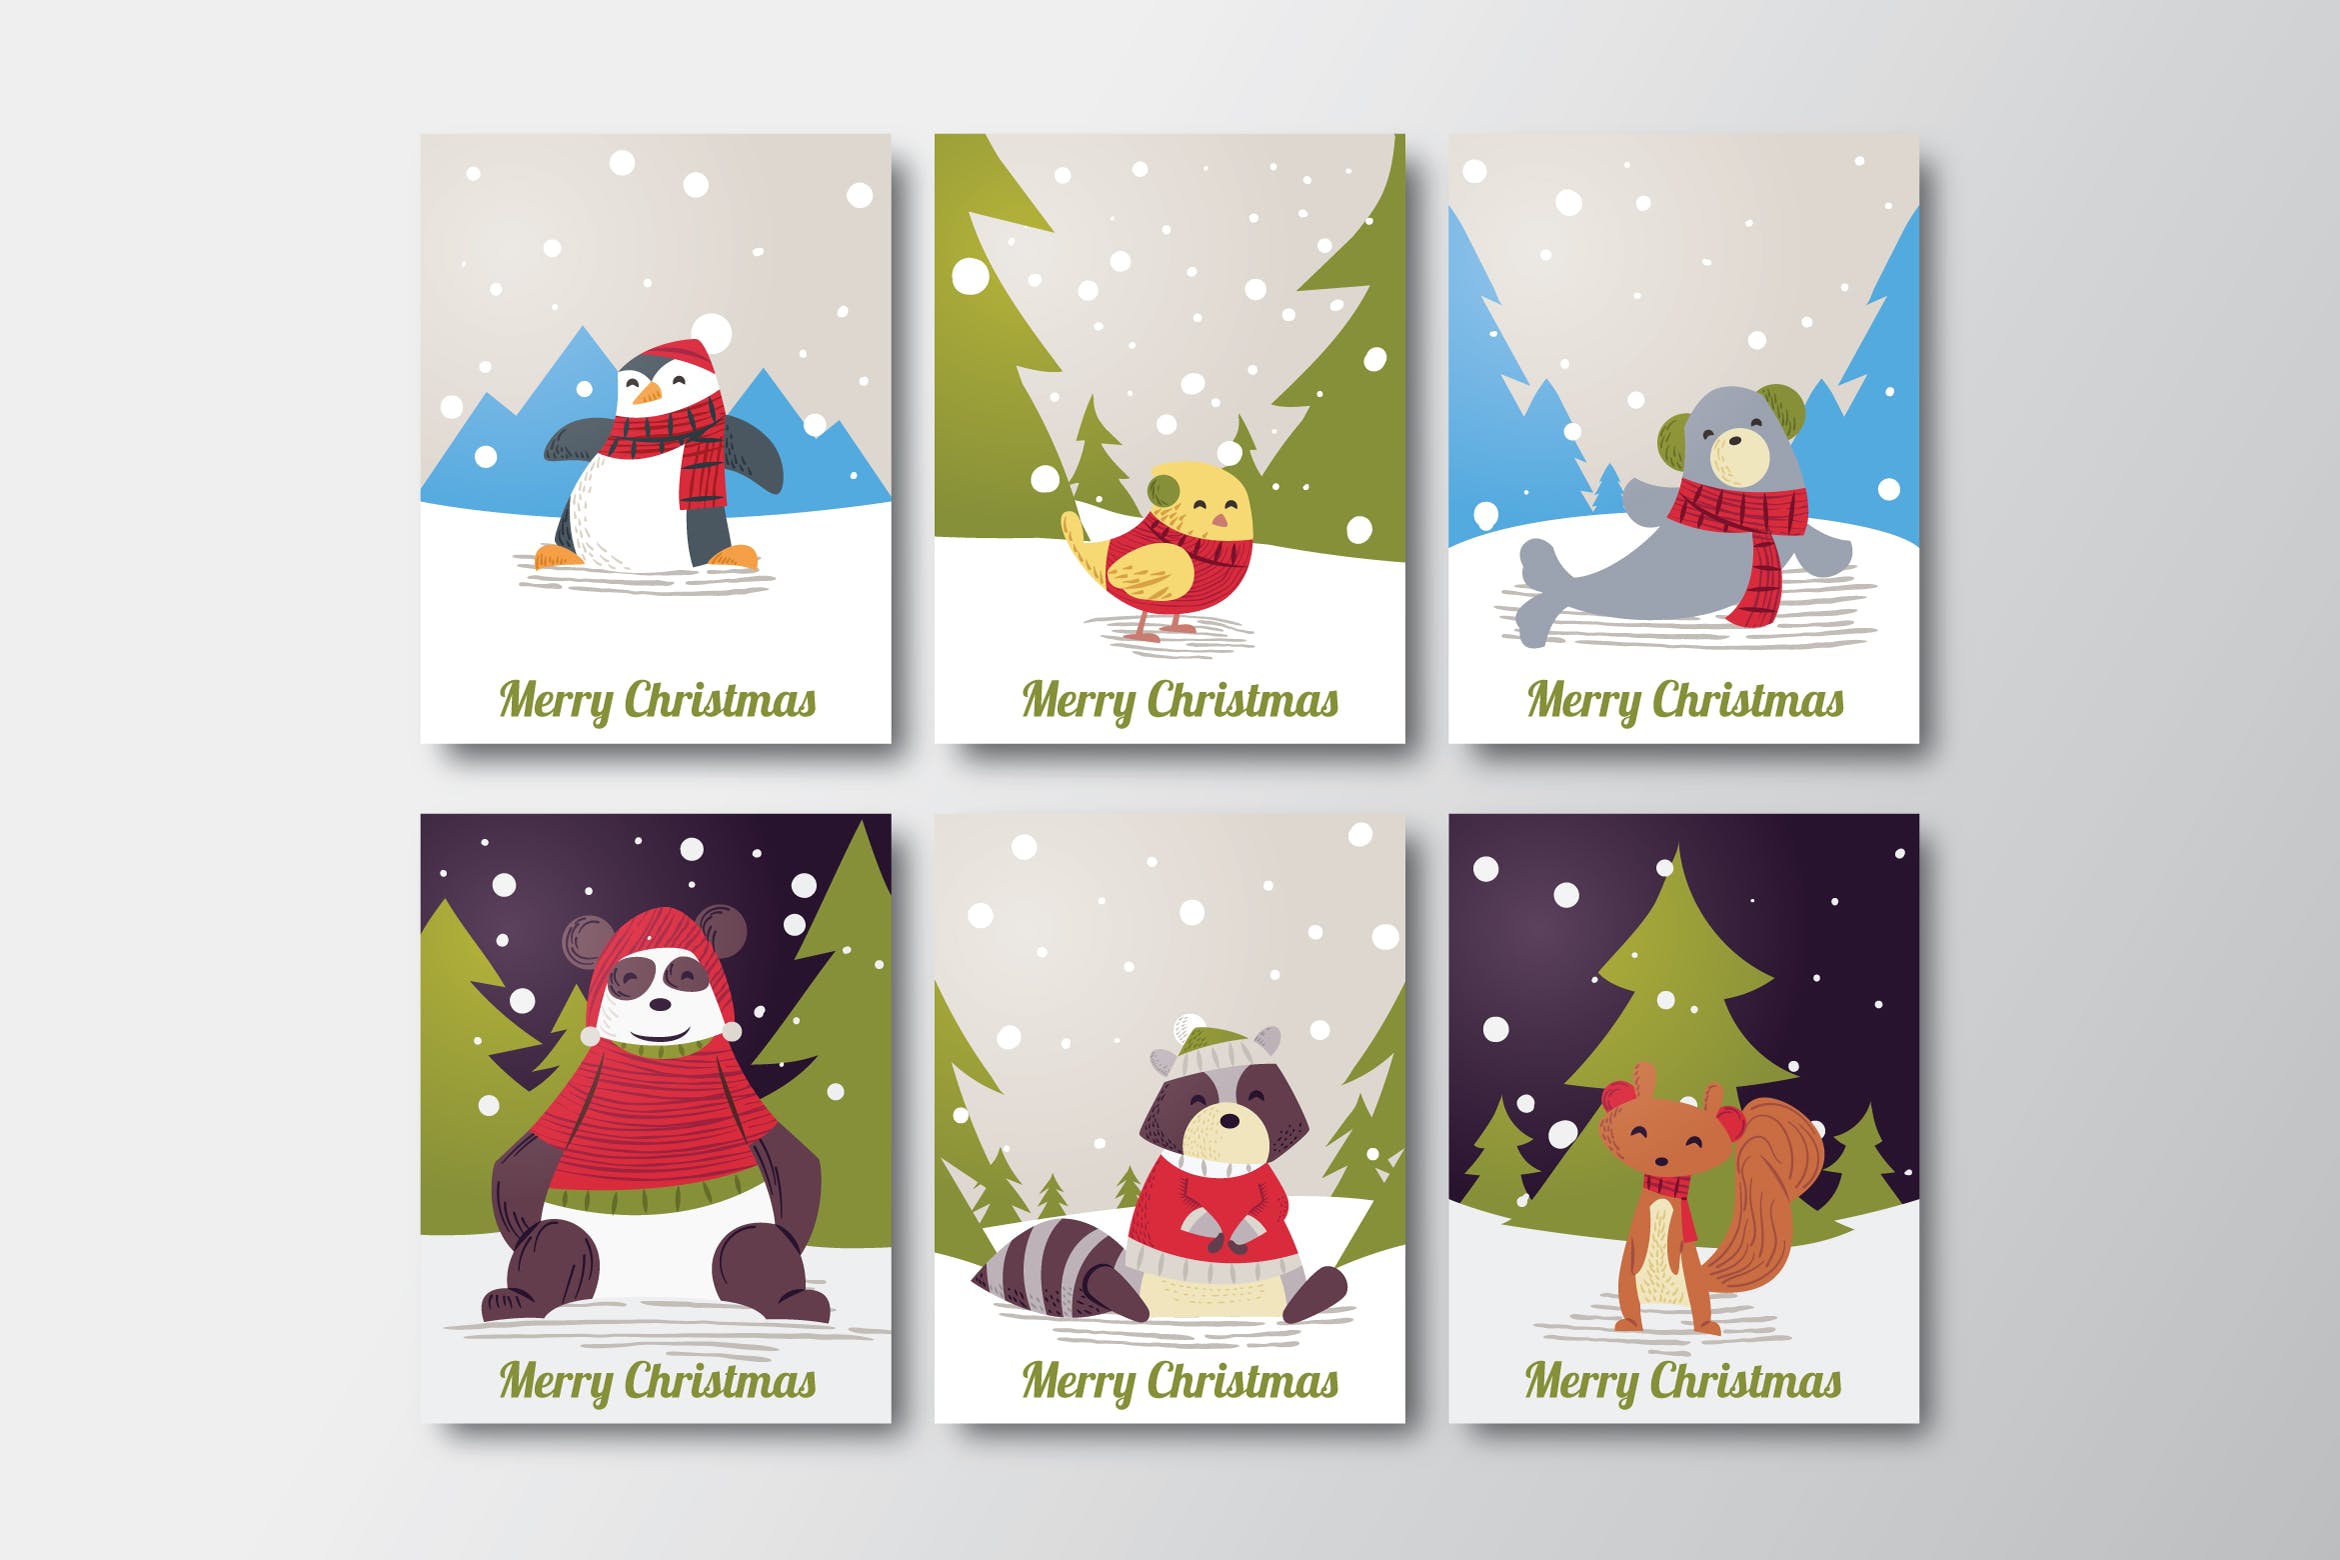 手绘设计风格圣诞节贺卡设计模板合集v3 Hand Drawn Christmas Cards Collection插图